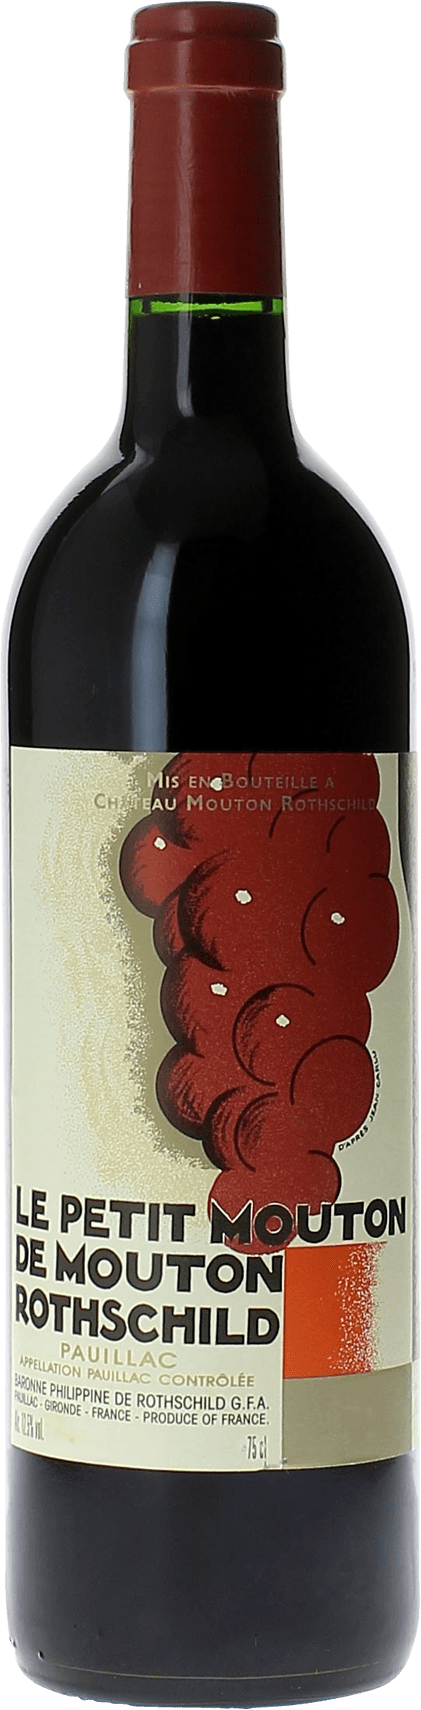 Petit mouton 2021 2nd vin de Mouton Rothschild Pauillac, Bordeaux rouge